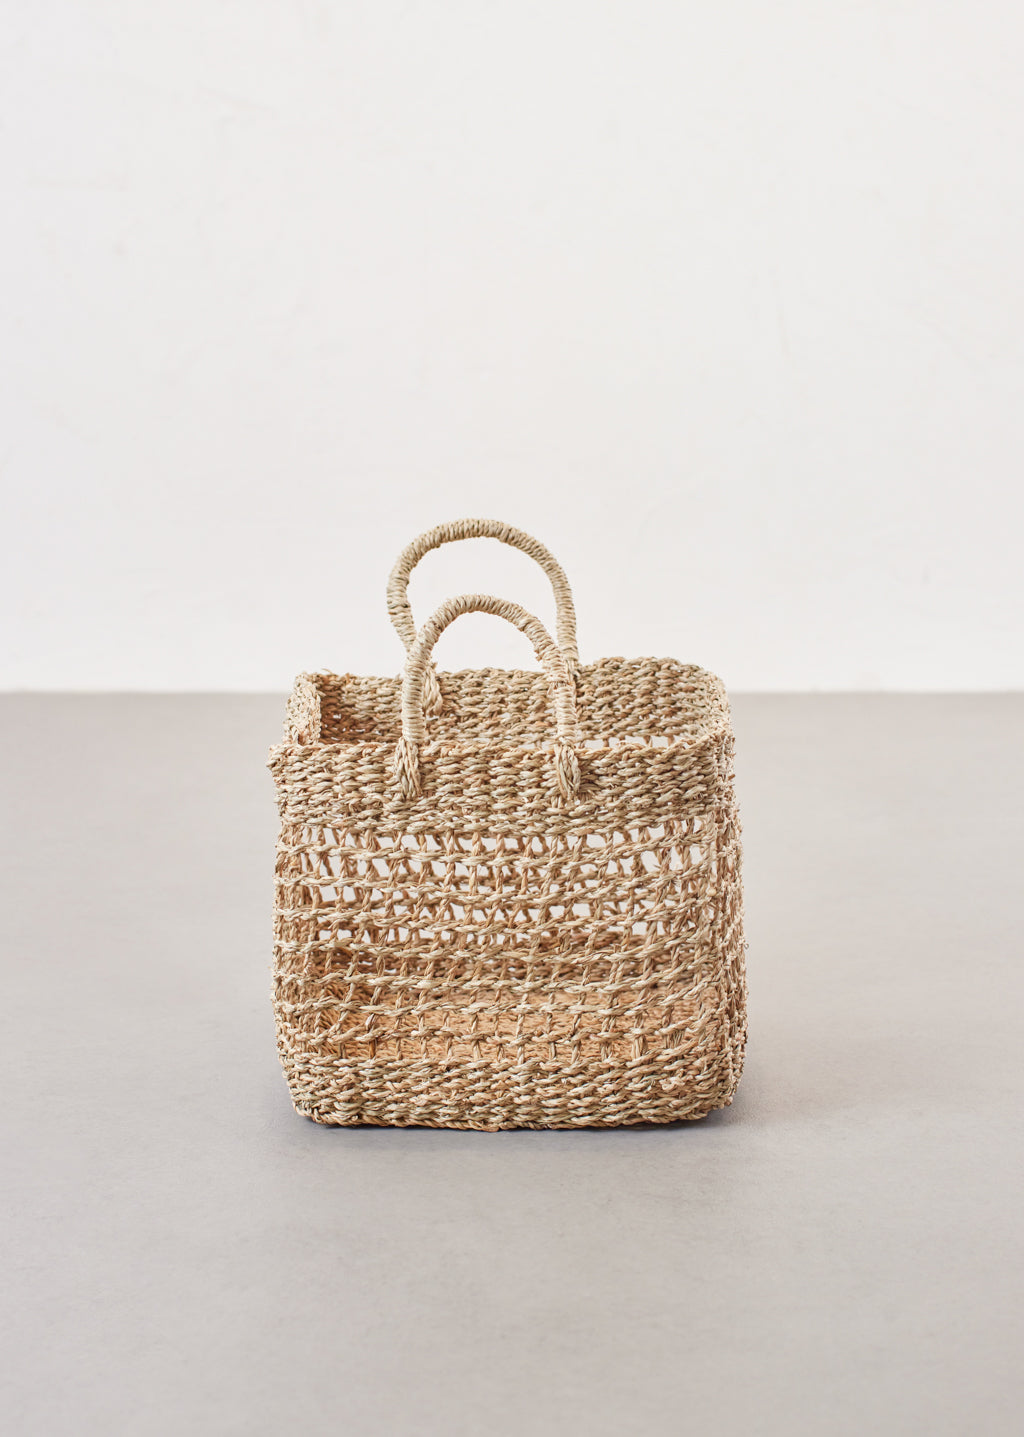 Small Square Seagrass Basket